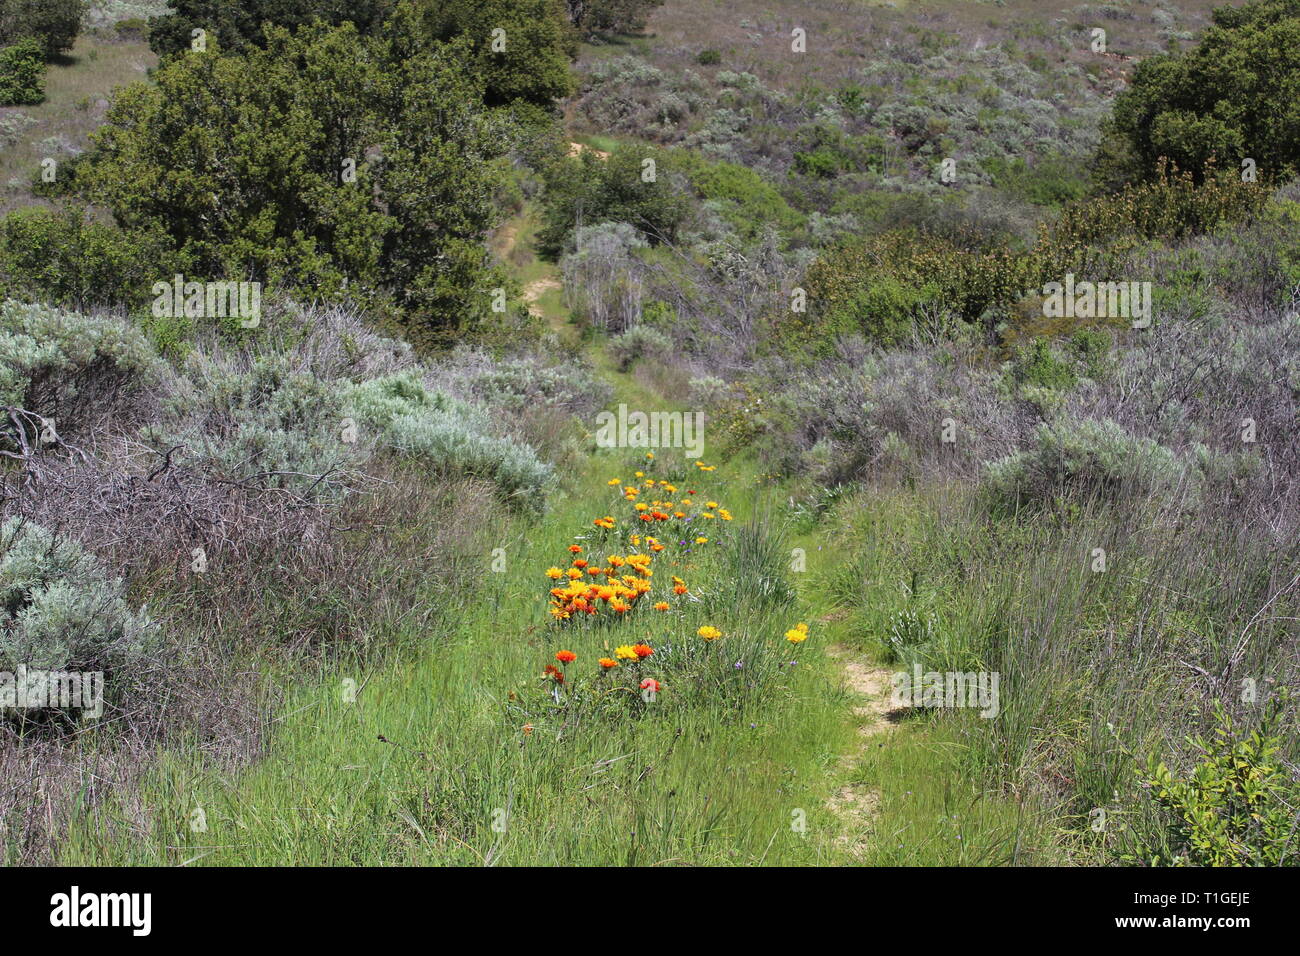 Non-native African Daisy lines a pathway through Chaparral near Santa Barbara, California Stock Photo